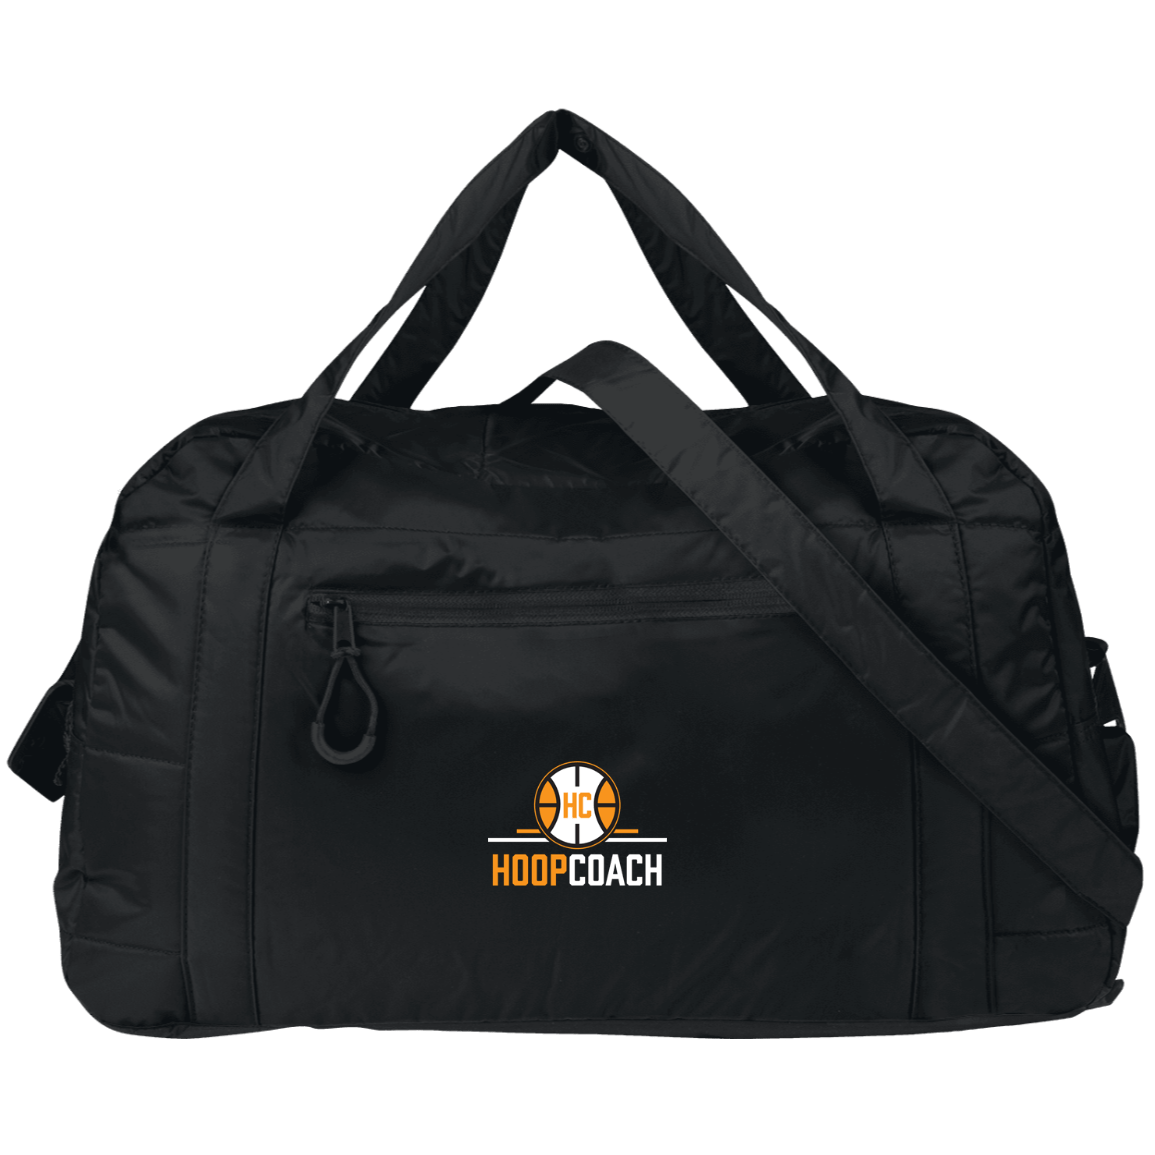 Hoop Coach Travel Bag - Hoop Coach